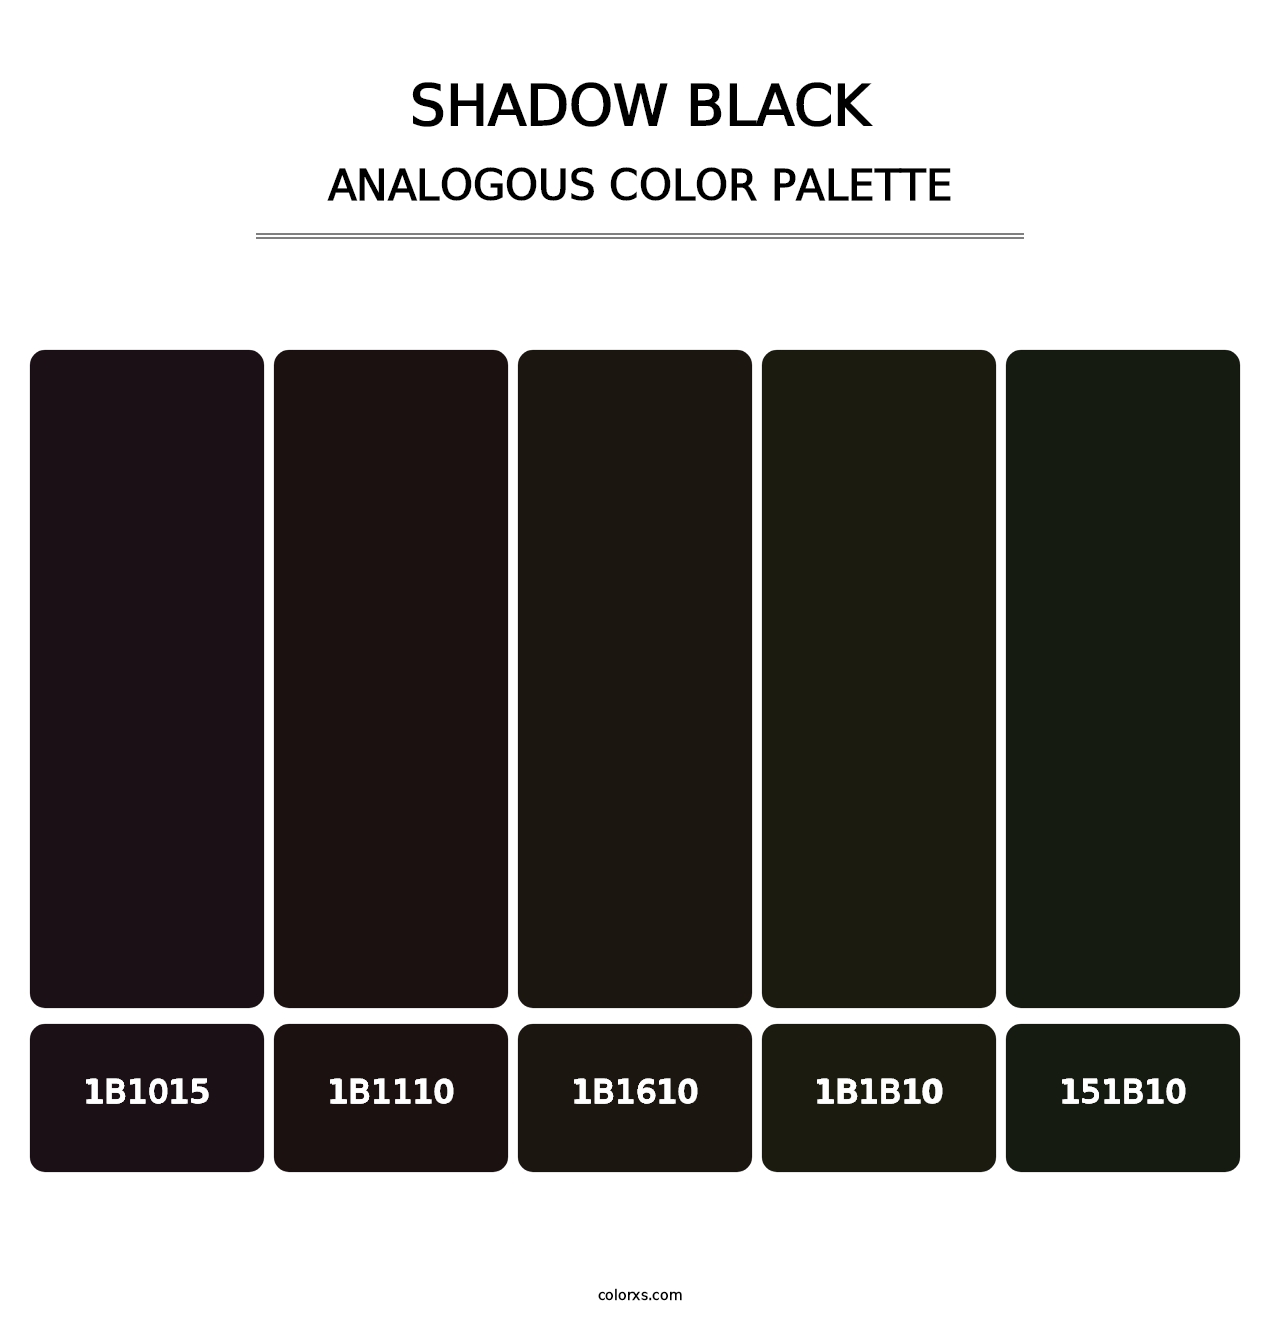 Shadow Black - Analogous Color Palette